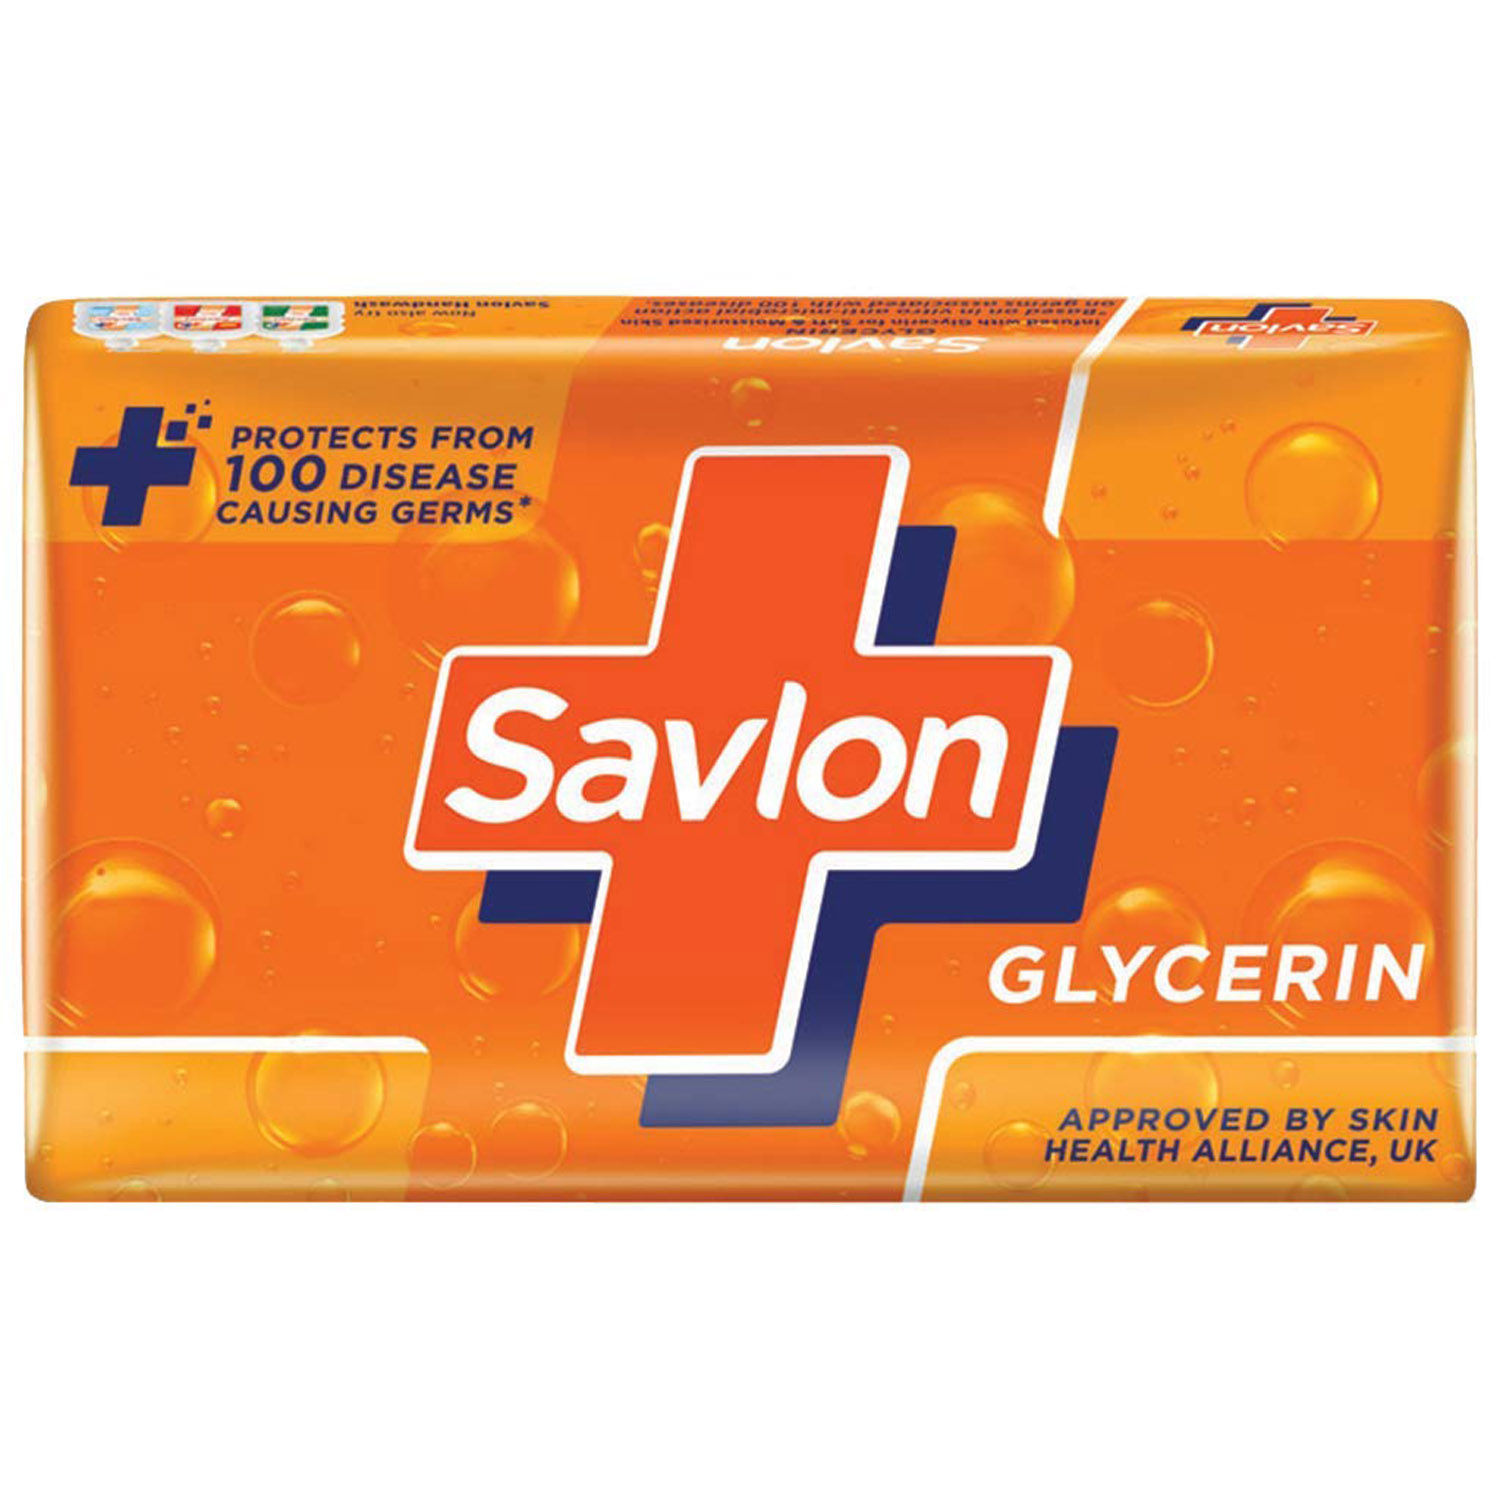 Savlon Glycerin Soap, 125 gm, Pack of 1 